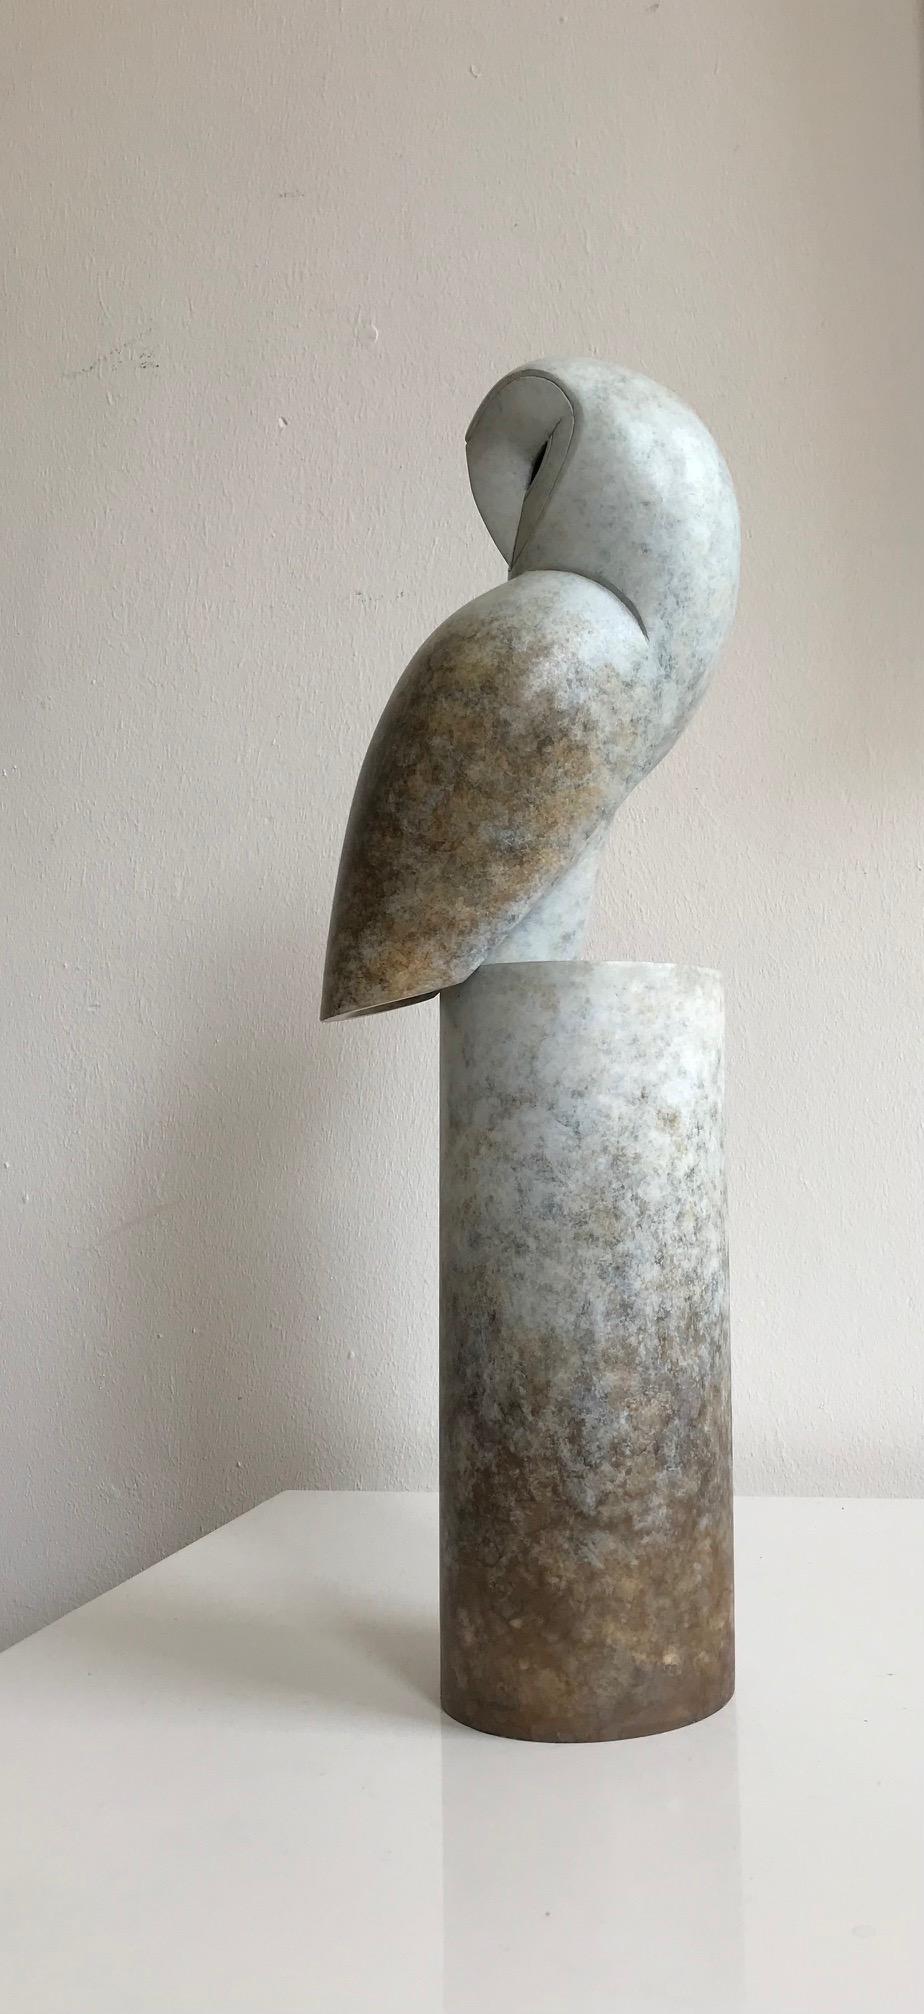 Portrait contemporain en bronze d'un hibou, chouette de grange, sculpture « Turnaround » - Sculpture de Anthony Theakston